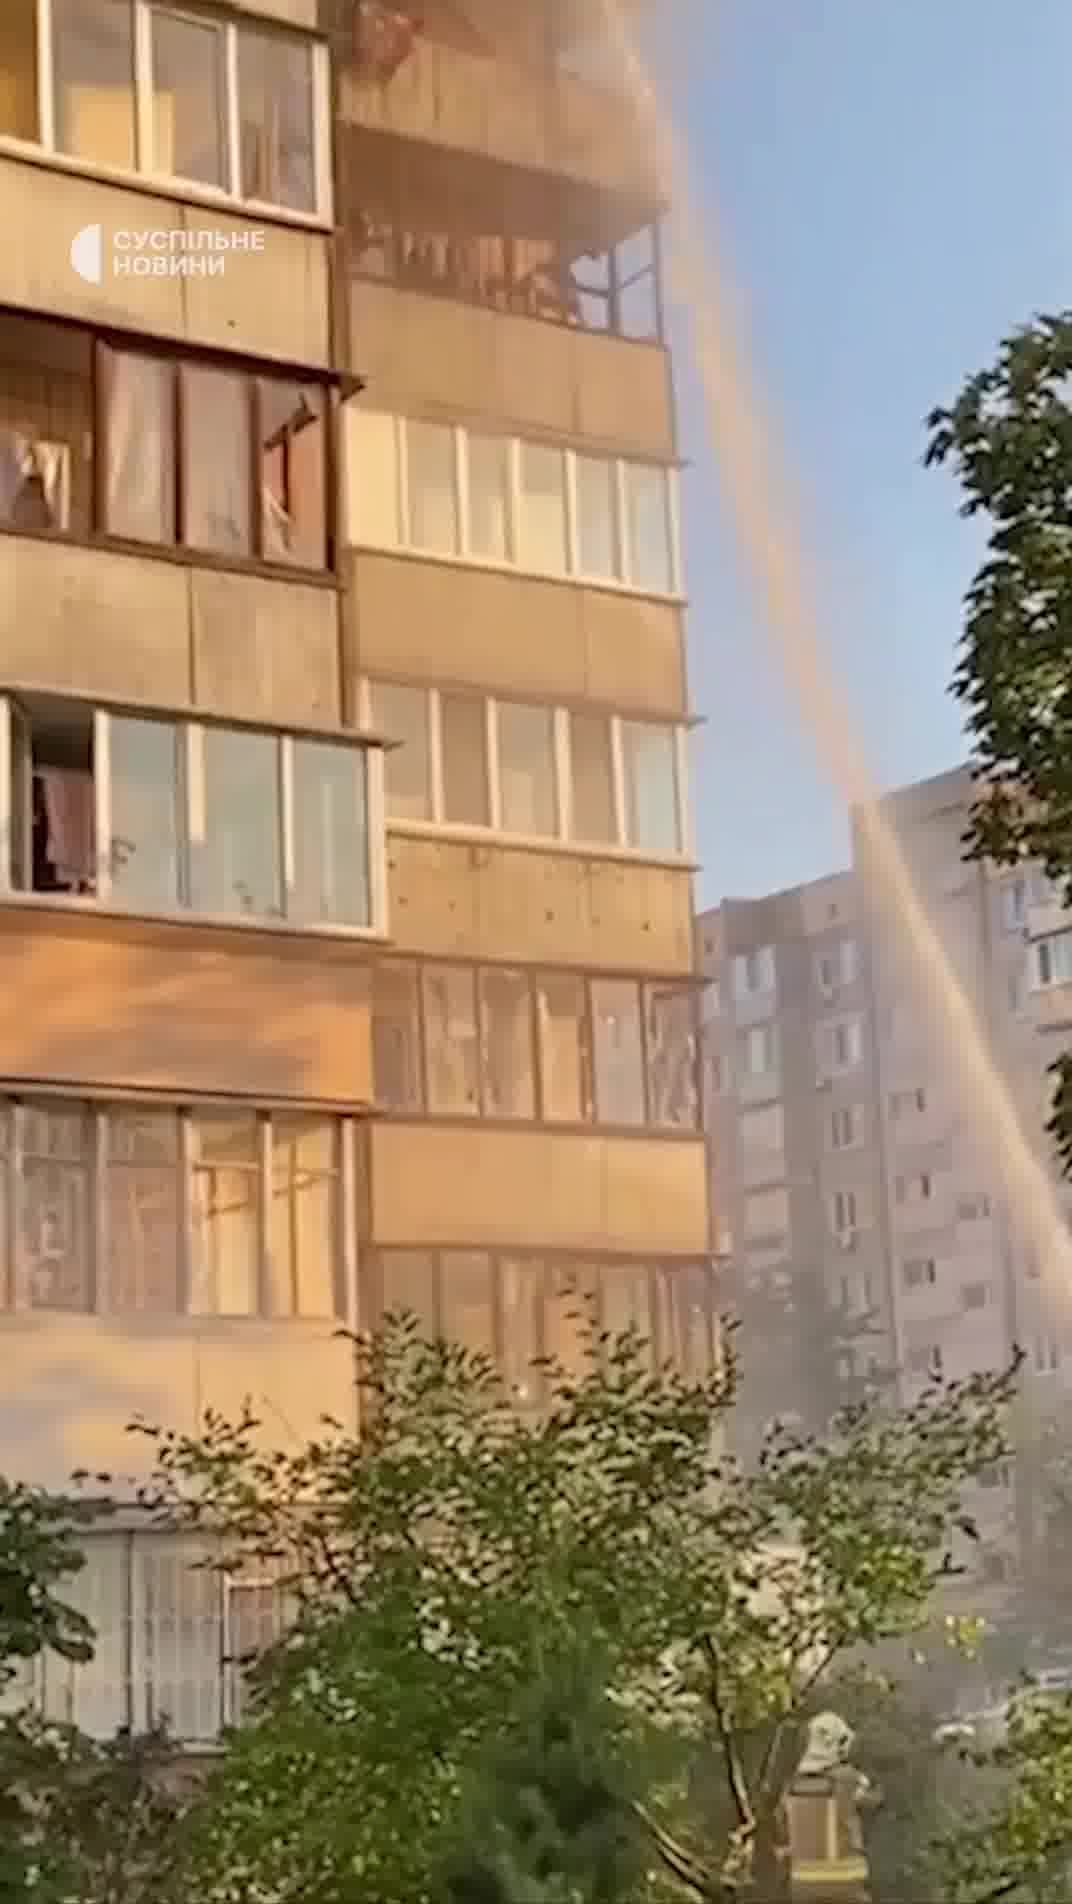 Budynek mieszkalny uszkodzony w wyniku rosyjskiego ataku rakietowego w dzielnicy Obołońskiej w Kijowie